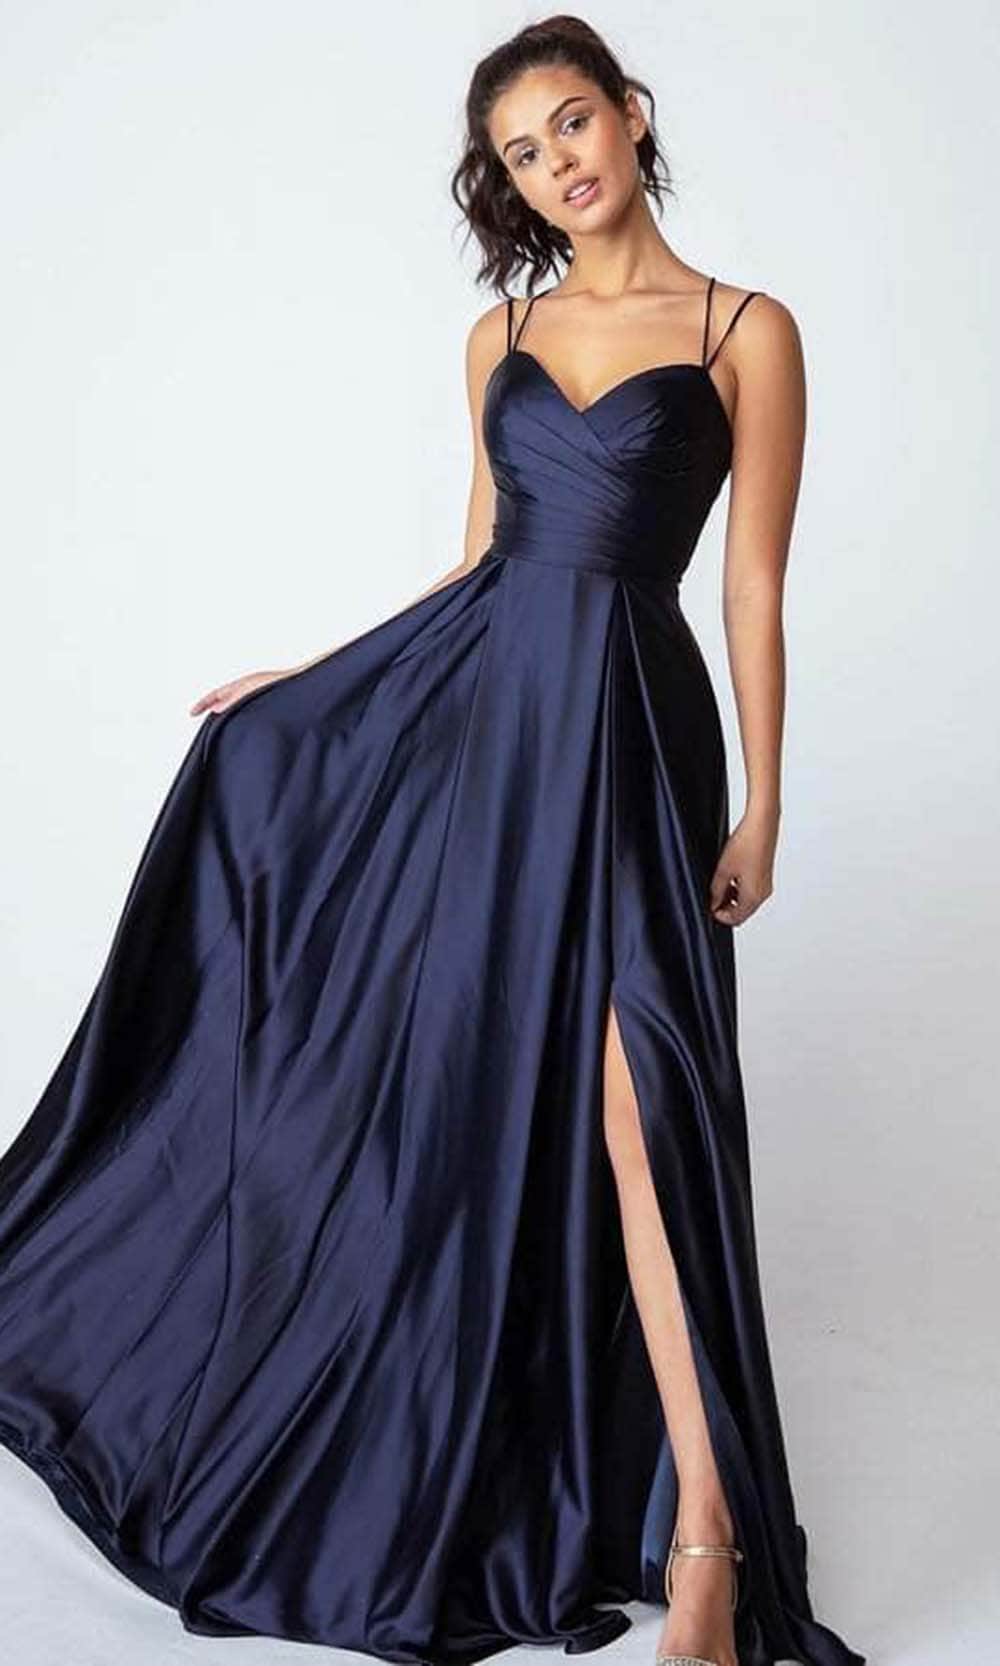 Image of Eureka Fashion 9925 - Pleated Sleeveless Evening Gown